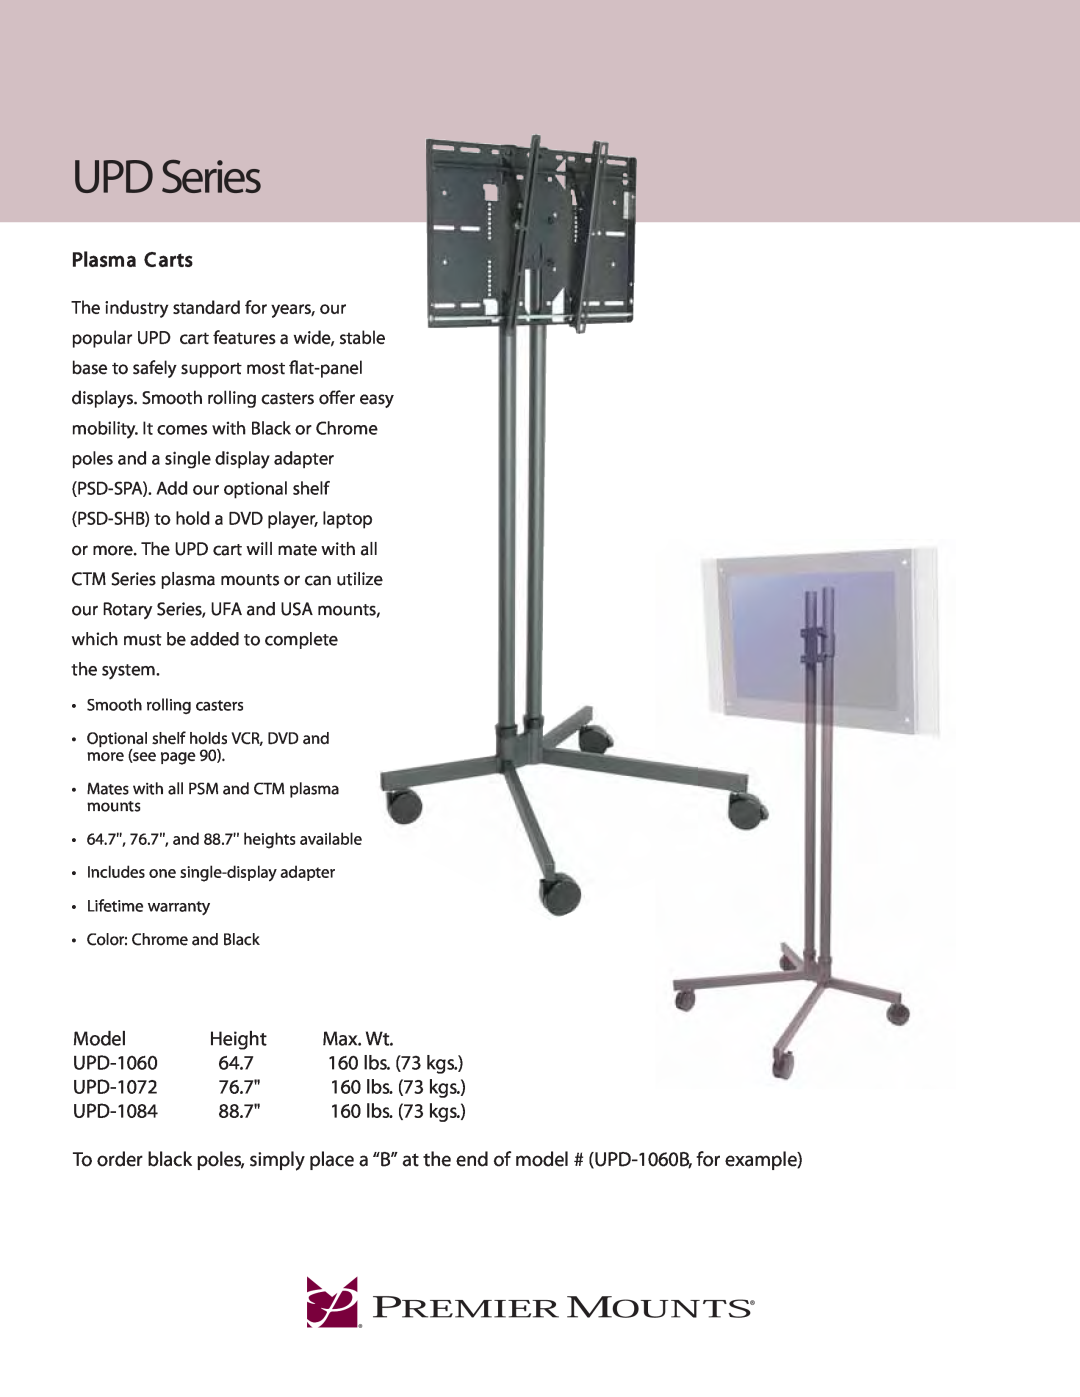 Premier Mounts UPD Series warranty Plasma C arts, Model, Height, Max. Wt, UPD-1060, 64.7, UPD-1072, 76.7, UPD-1084, 88.7 